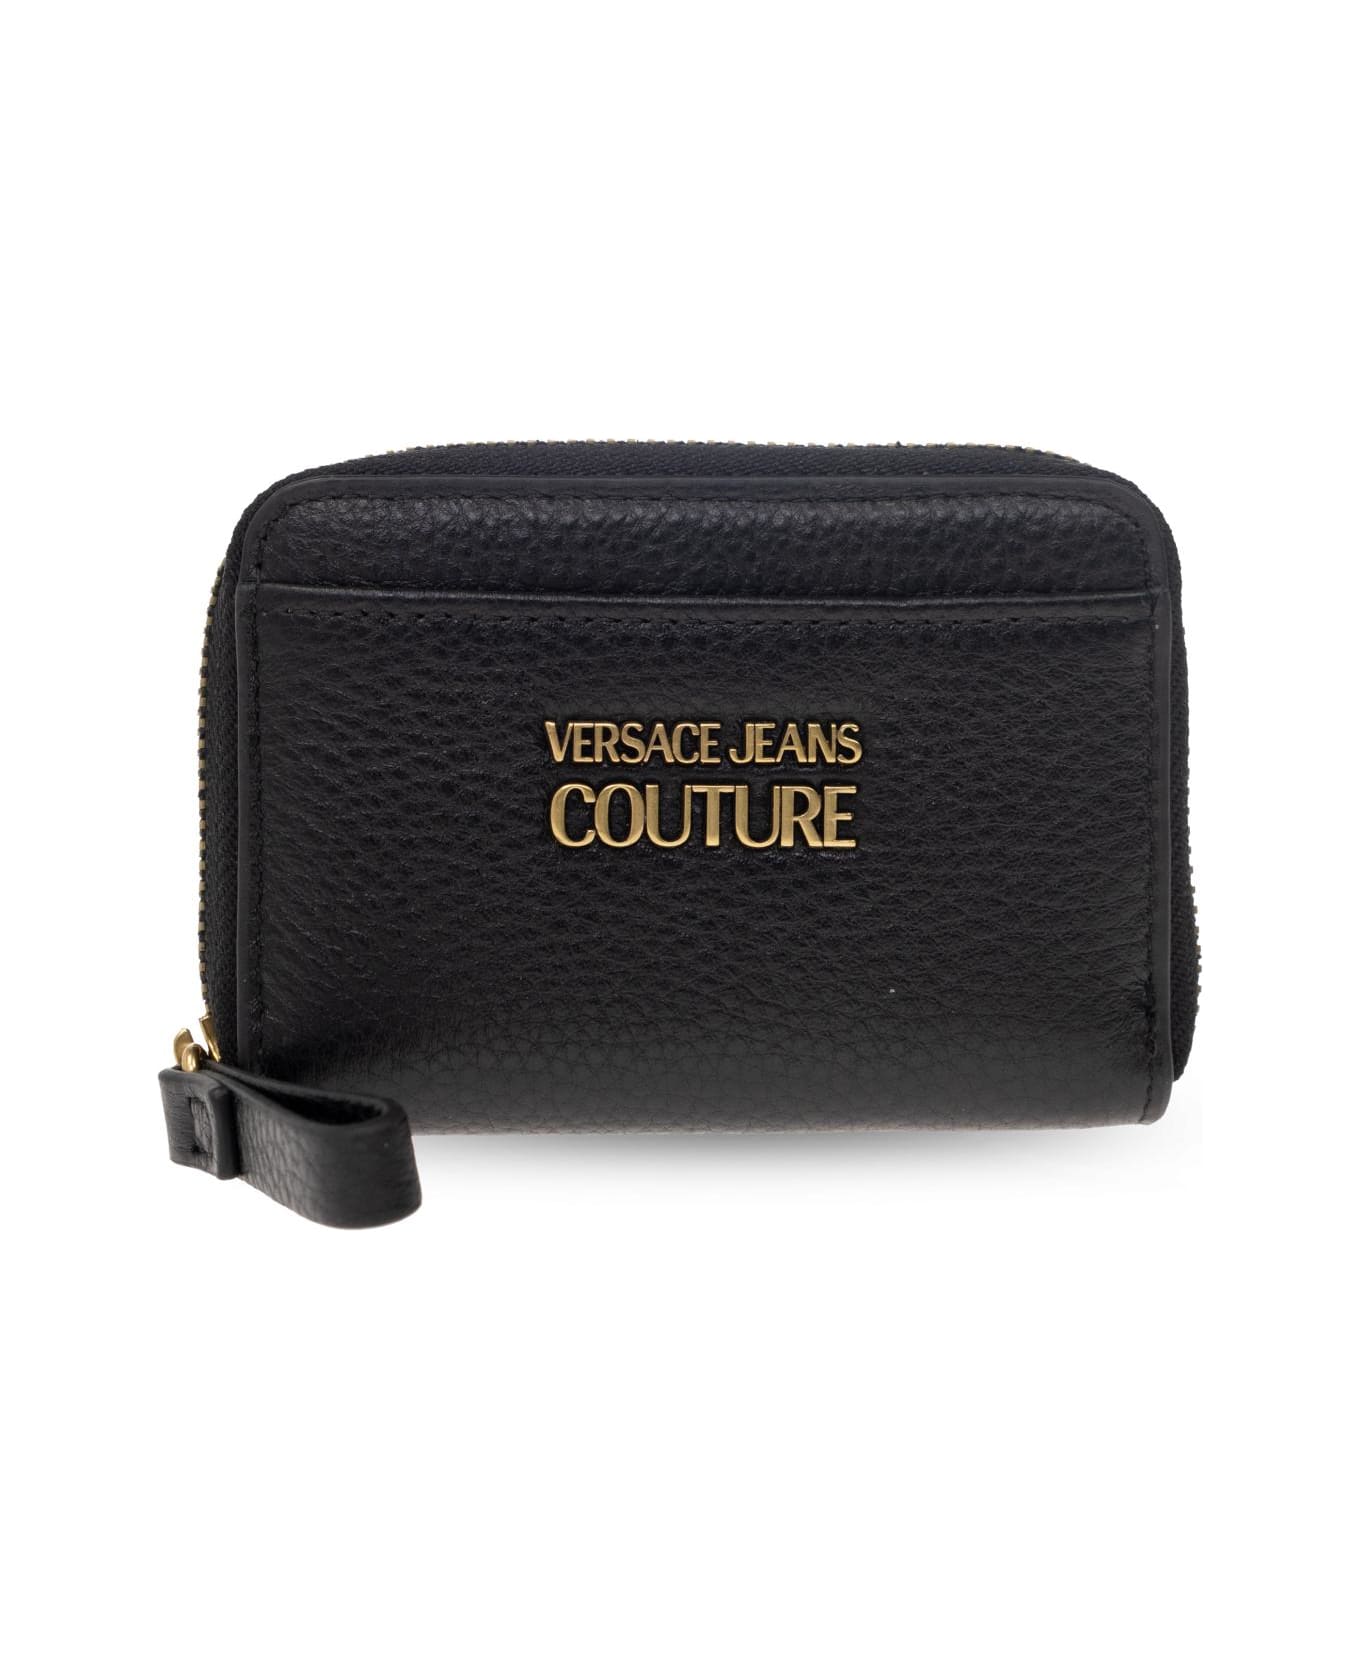 Versace Jeans Couture Logo Plaque Square Shape Wallet